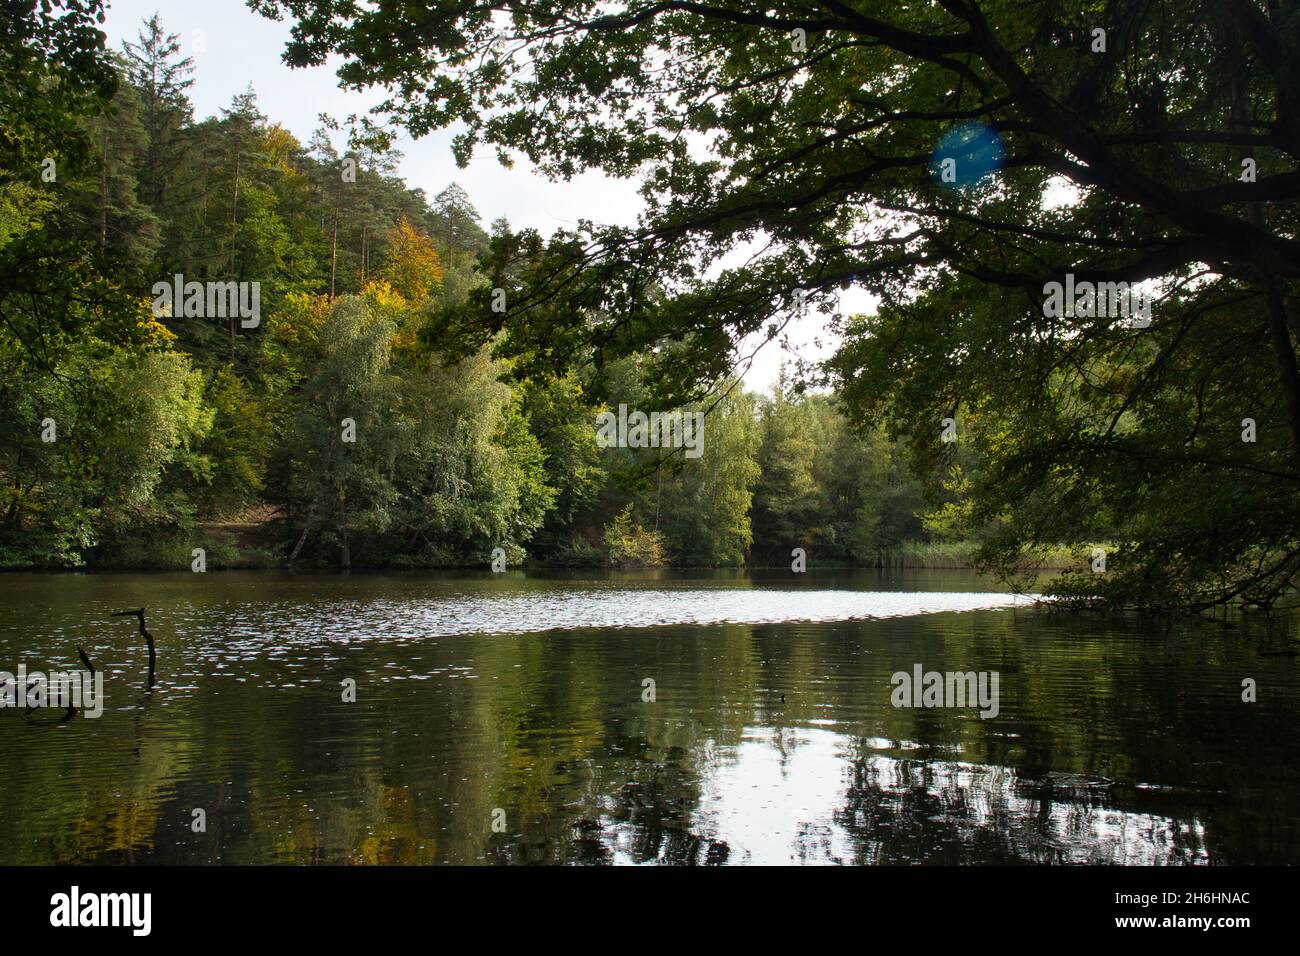 Les feuilles commencent à passer du vert au jaune autour du lac Neuwoog dans la forêt du Palatinat rhénan en Allemagne, le jour de l'automne. Banque D'Images